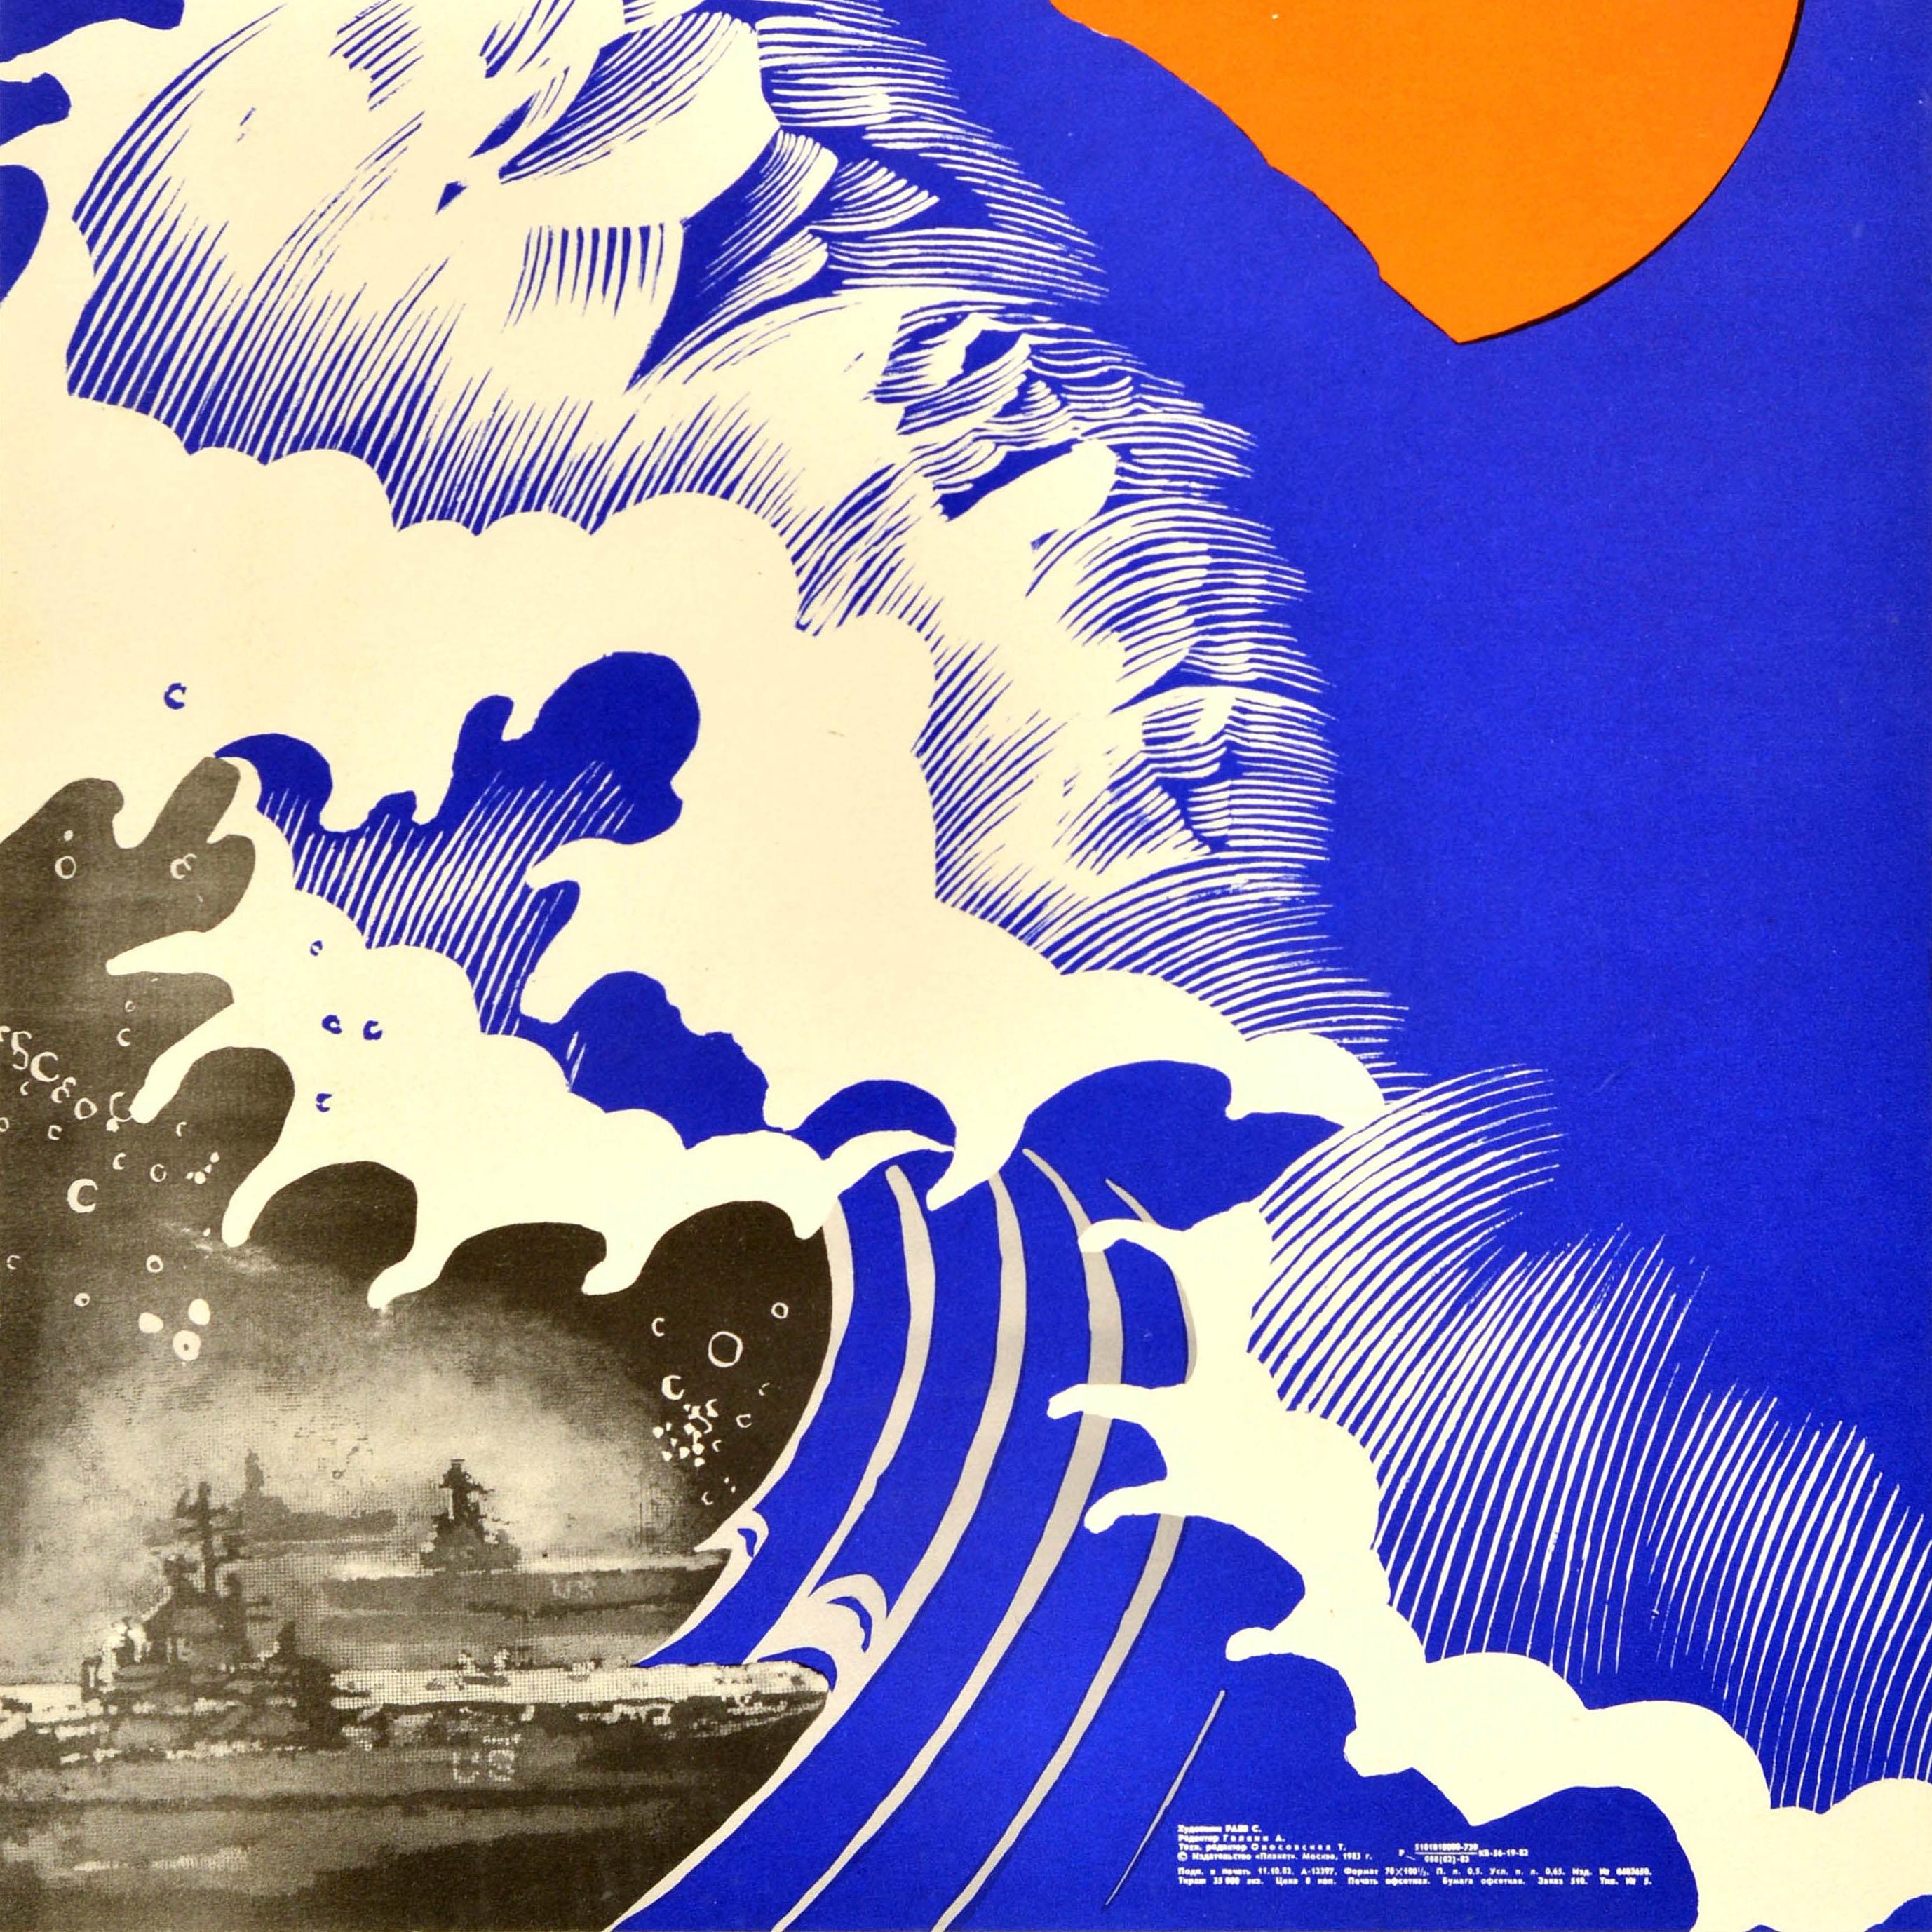 Original Poster aus der Zeit des Kalten Krieges - Мир Индиискому Океану! Frieden im Indischen Ozean - mit einer Illustration einer großen blauen Welle, die im Begriff ist, eine schwarz-weiße Abbildung von US-Marine-Schiffen auf See in der Ecke zu